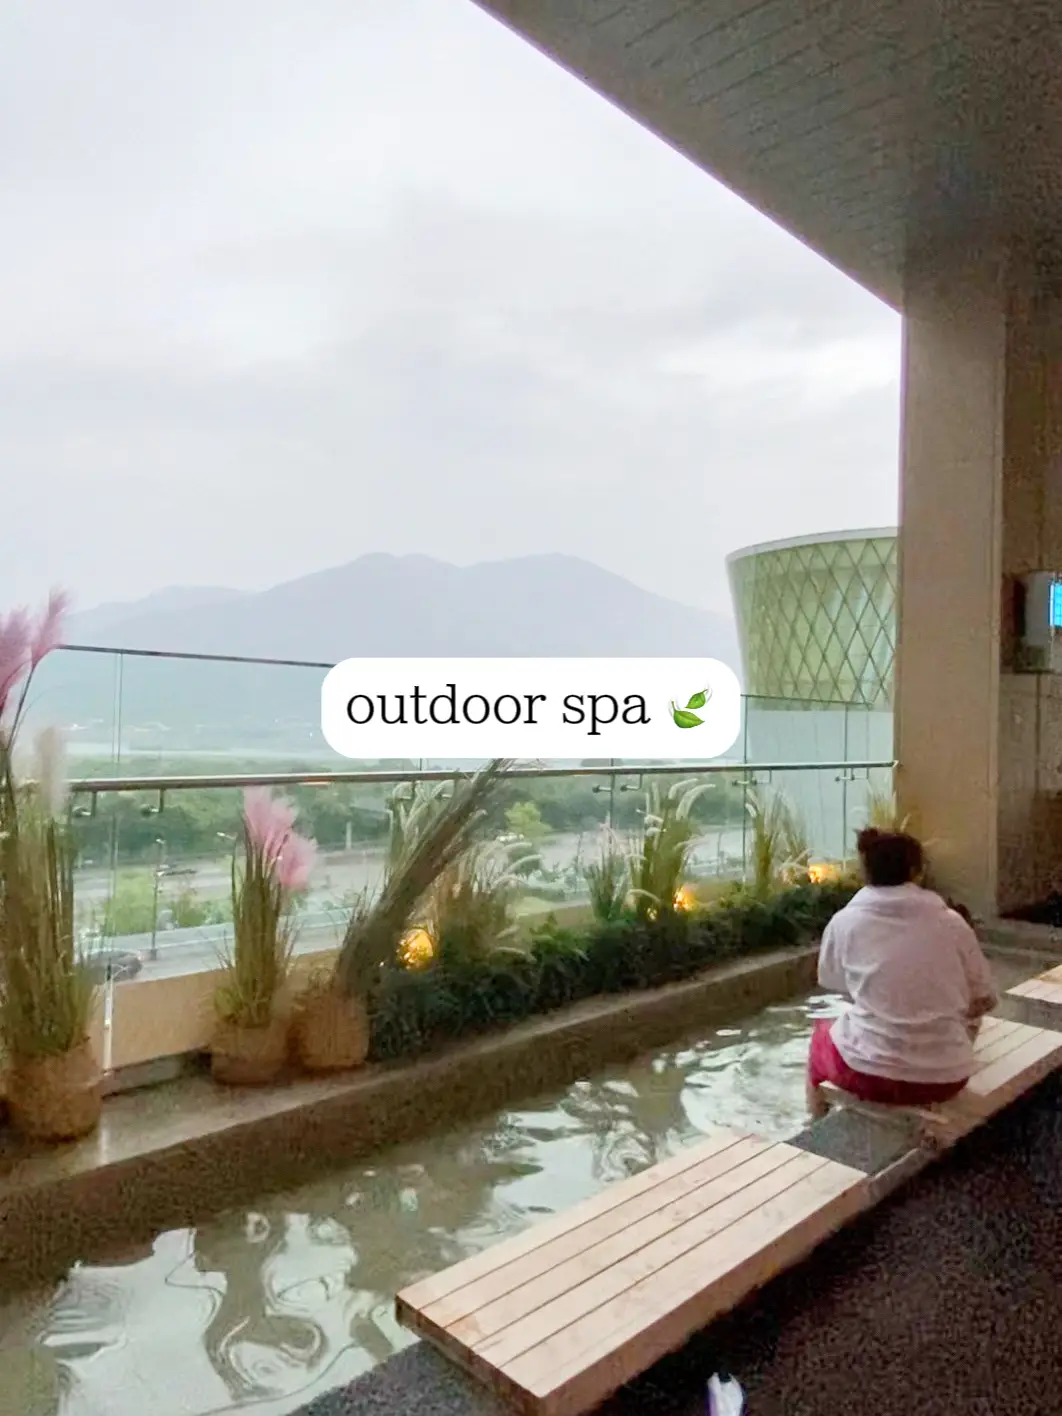 ✨ Must-go jimjilbang/ spa in Seoul, Korea! ✨'s images(3)